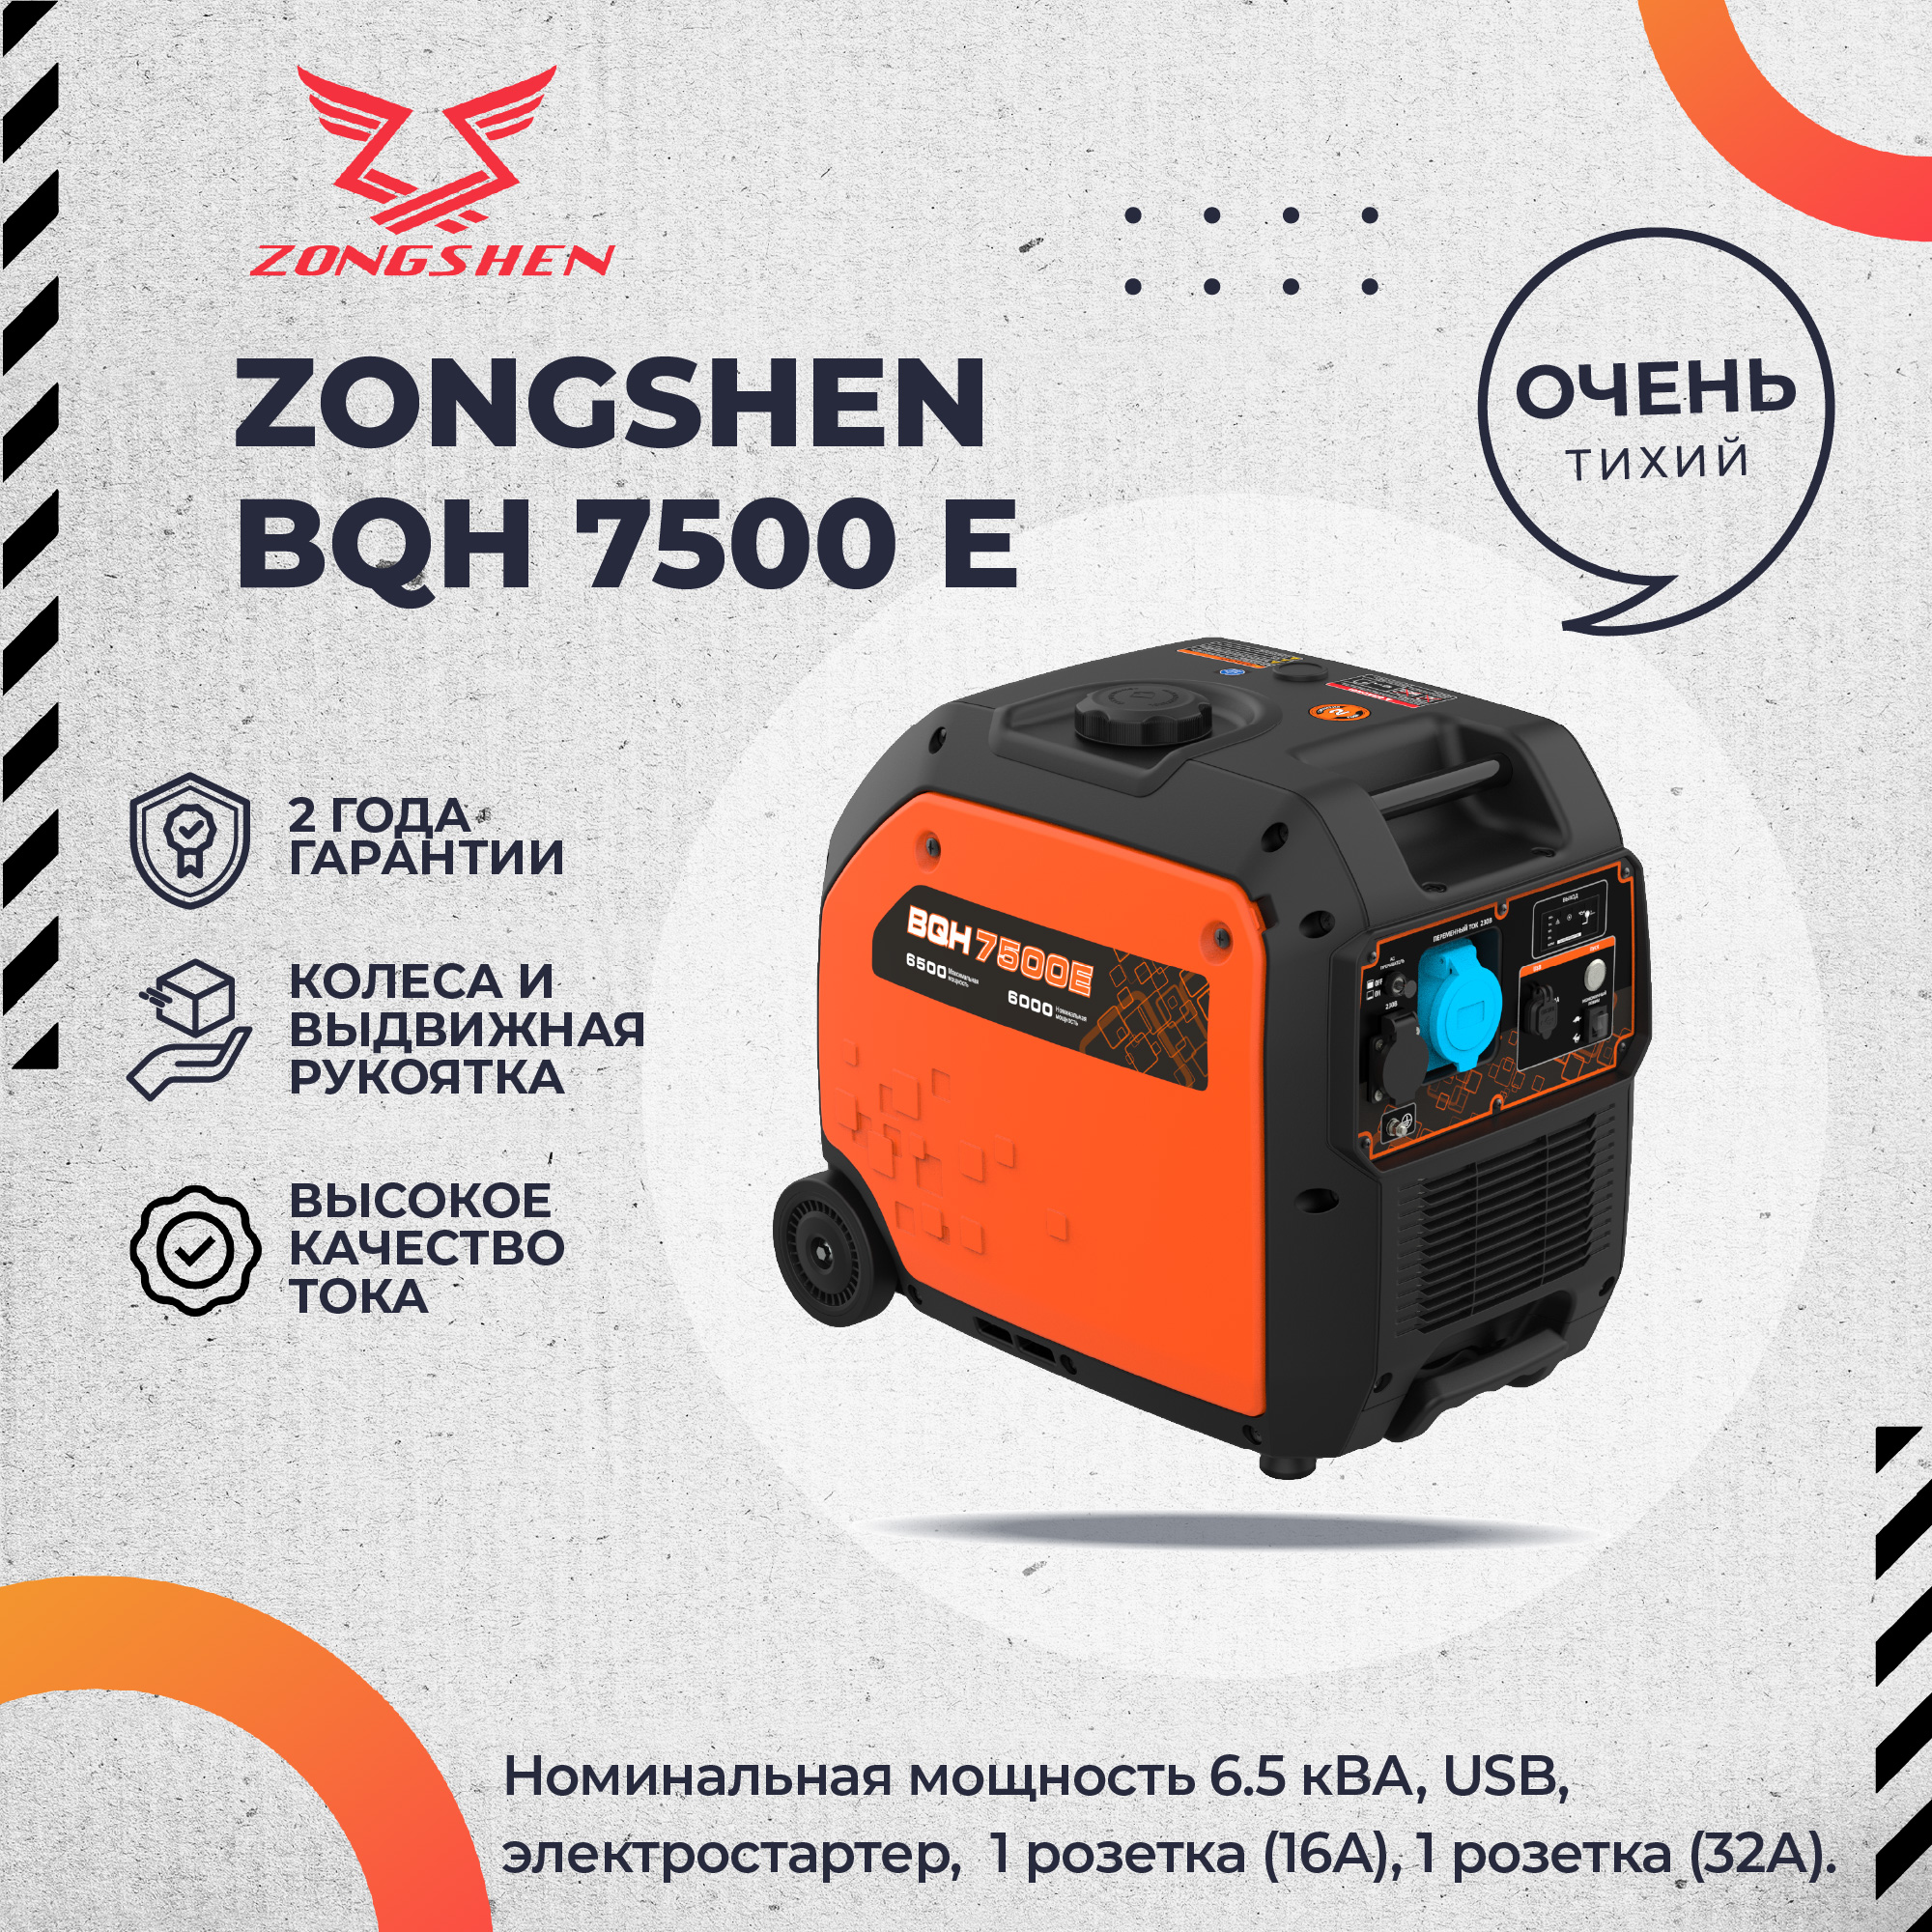 Бензиновый инверторный генератор Zongshen BQH 7500 E